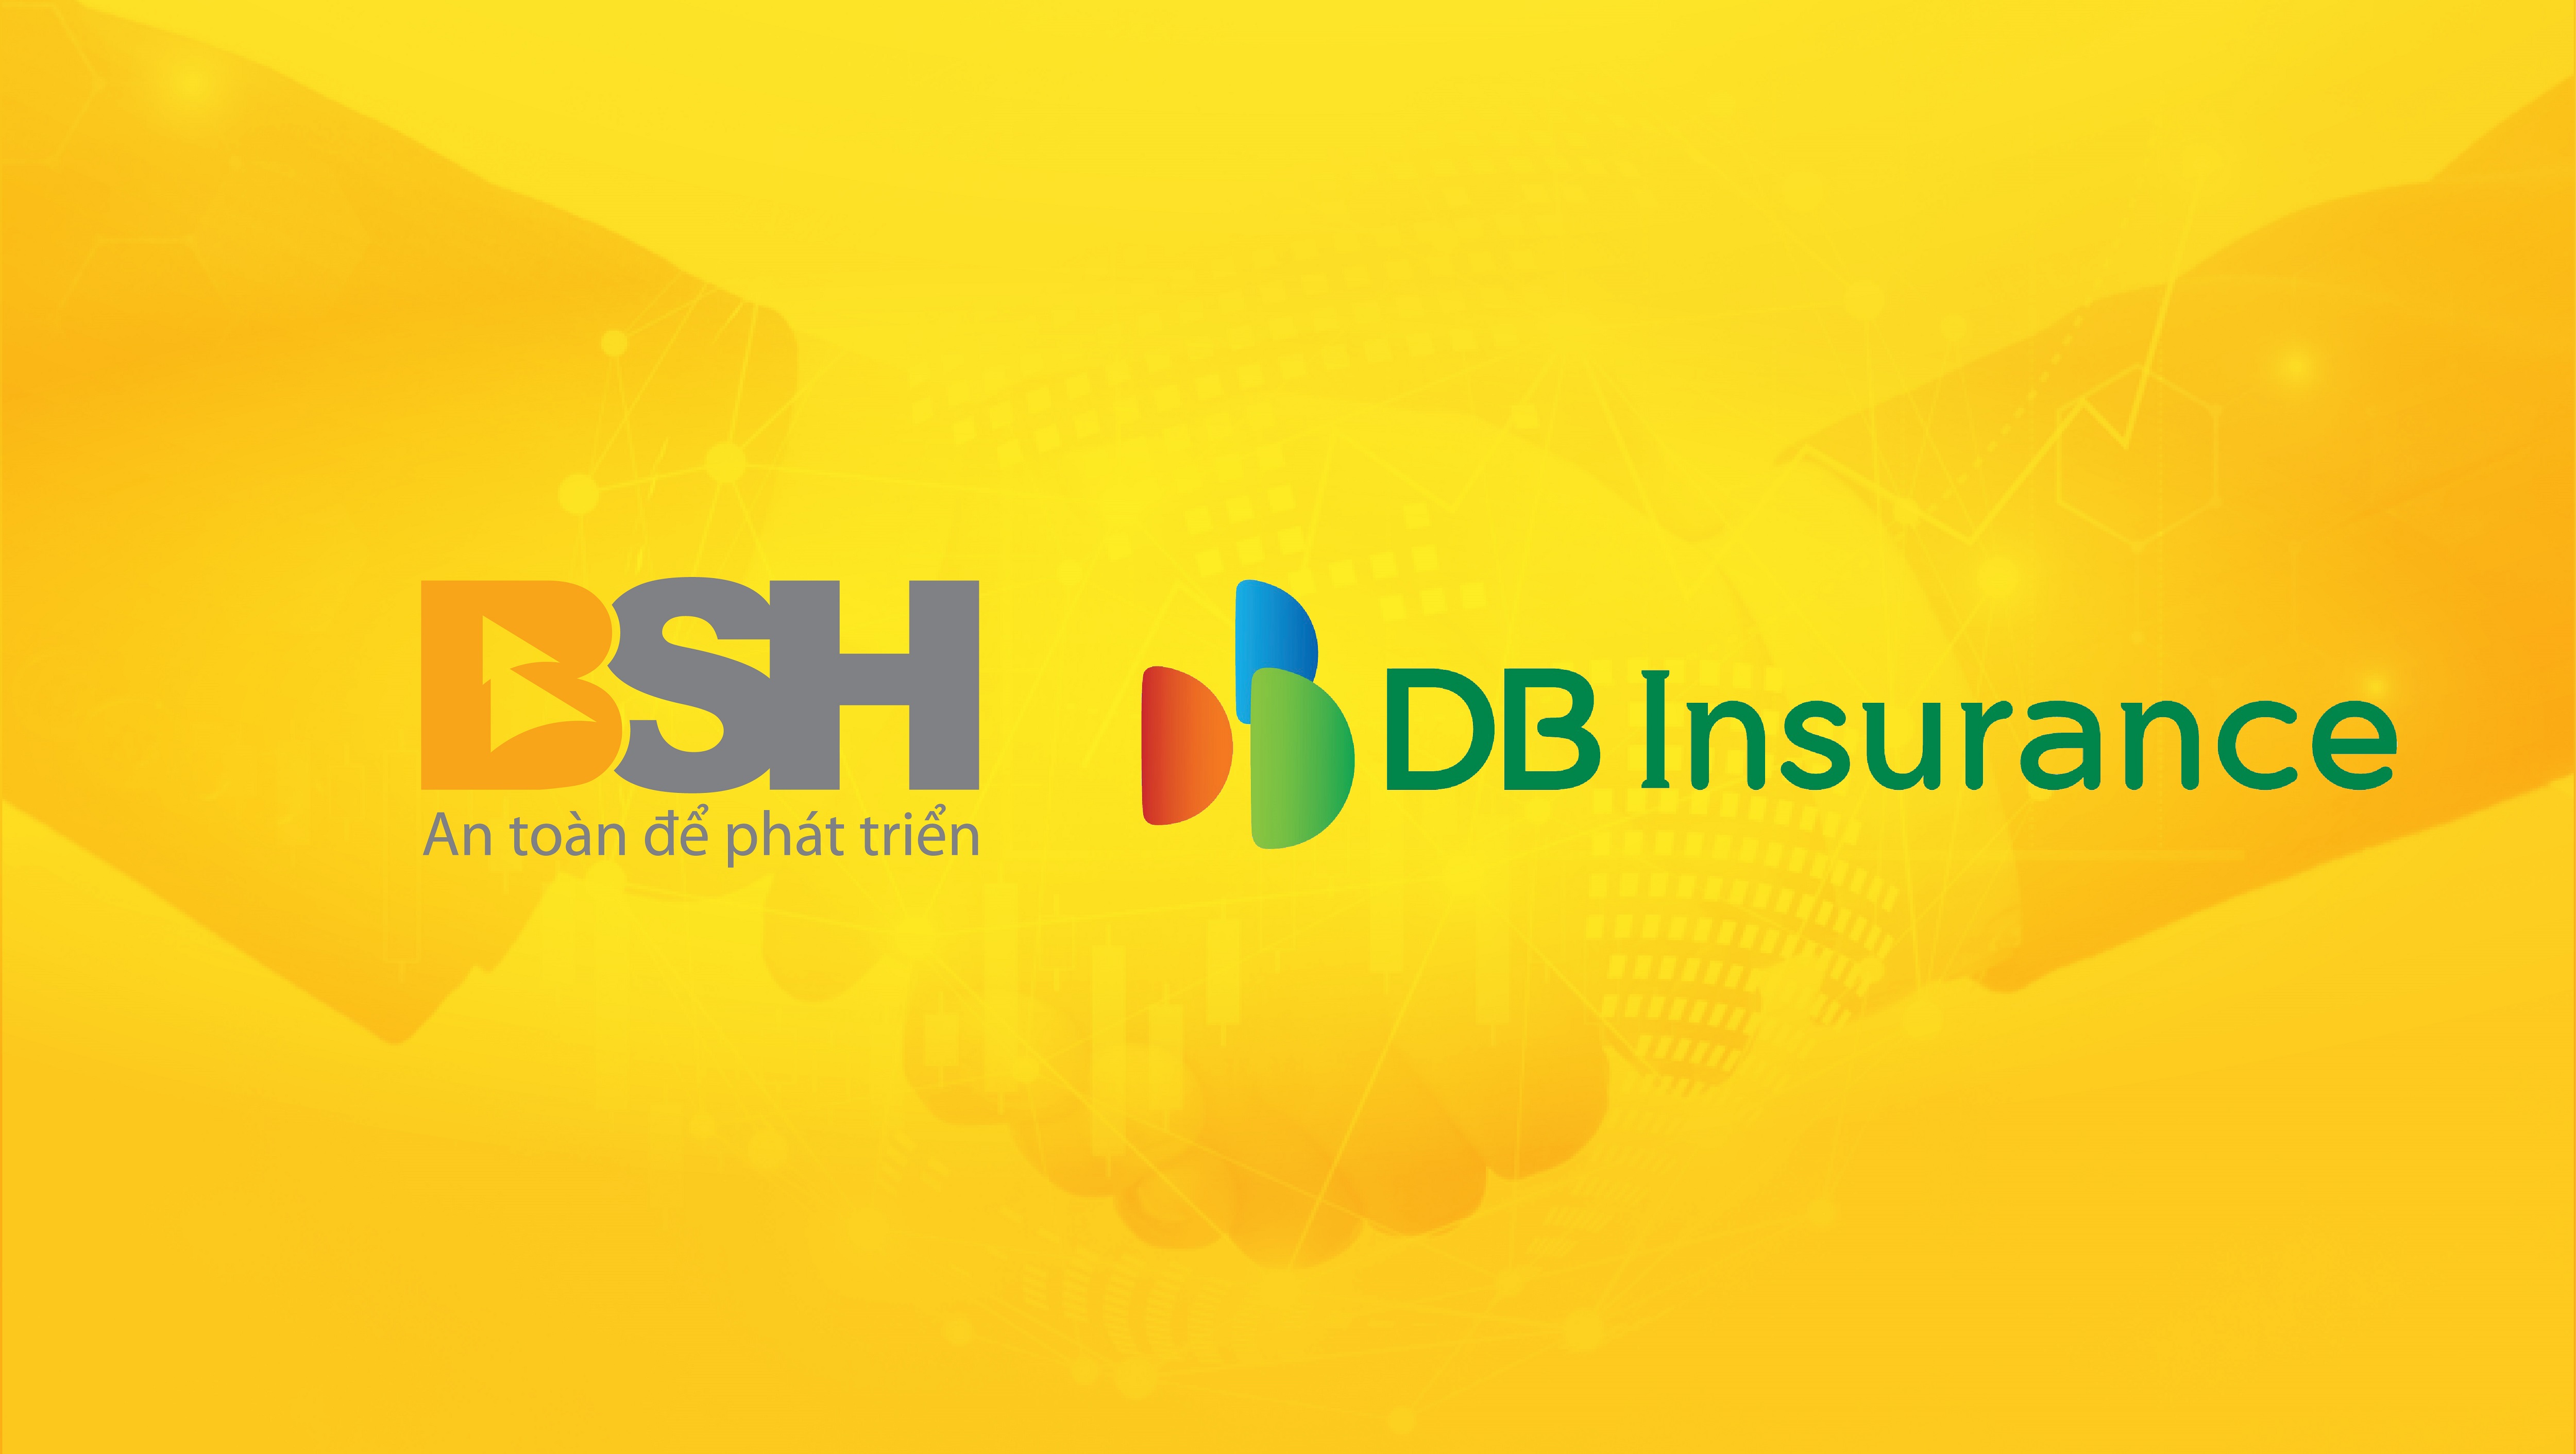 Bảo hiểm DB (H&agrave;n Quốc) ch&iacute;nh thức k&yacute; hợp đồng mua 75% cổ phần Bảo hiểm BSH &nbsp;